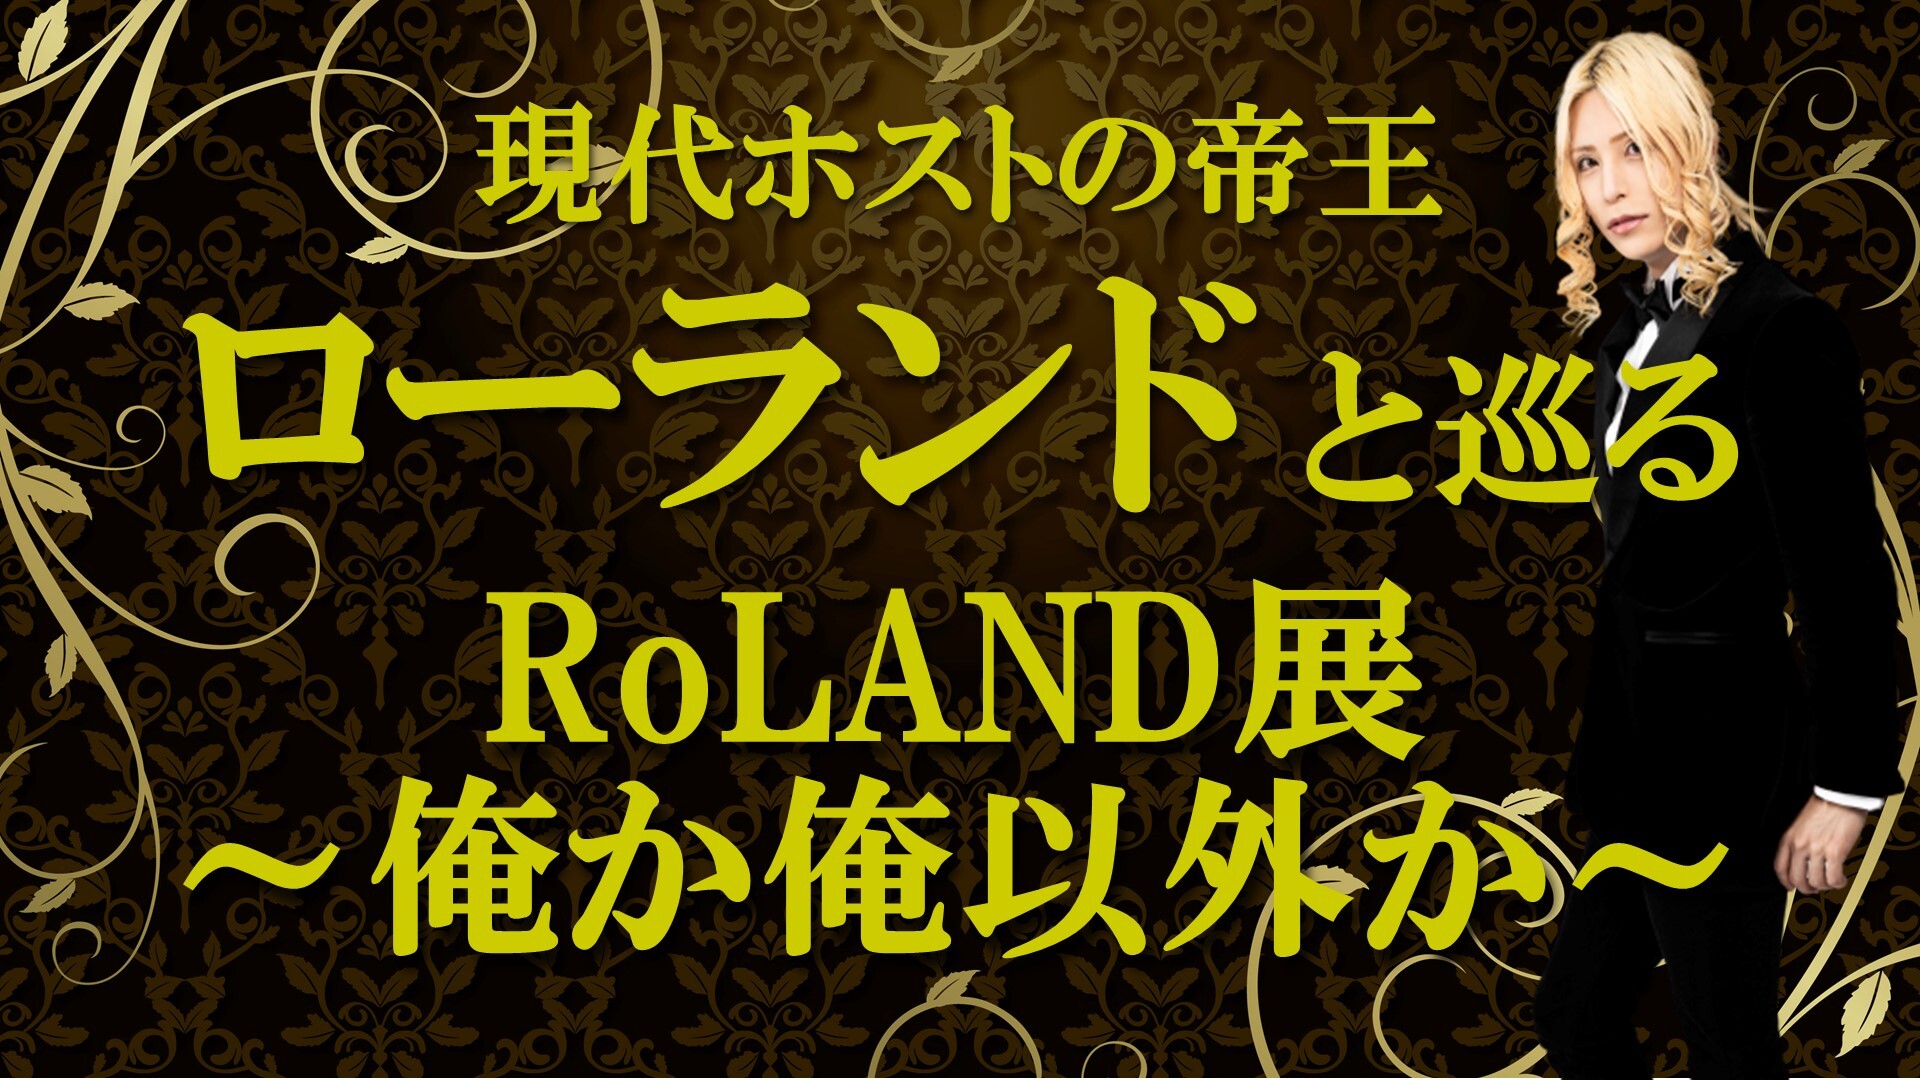 現代ホストの帝王 ローランドと巡る展覧会 Roland 俺か 俺以外か を8月26日 水 19時から生放送でお届け